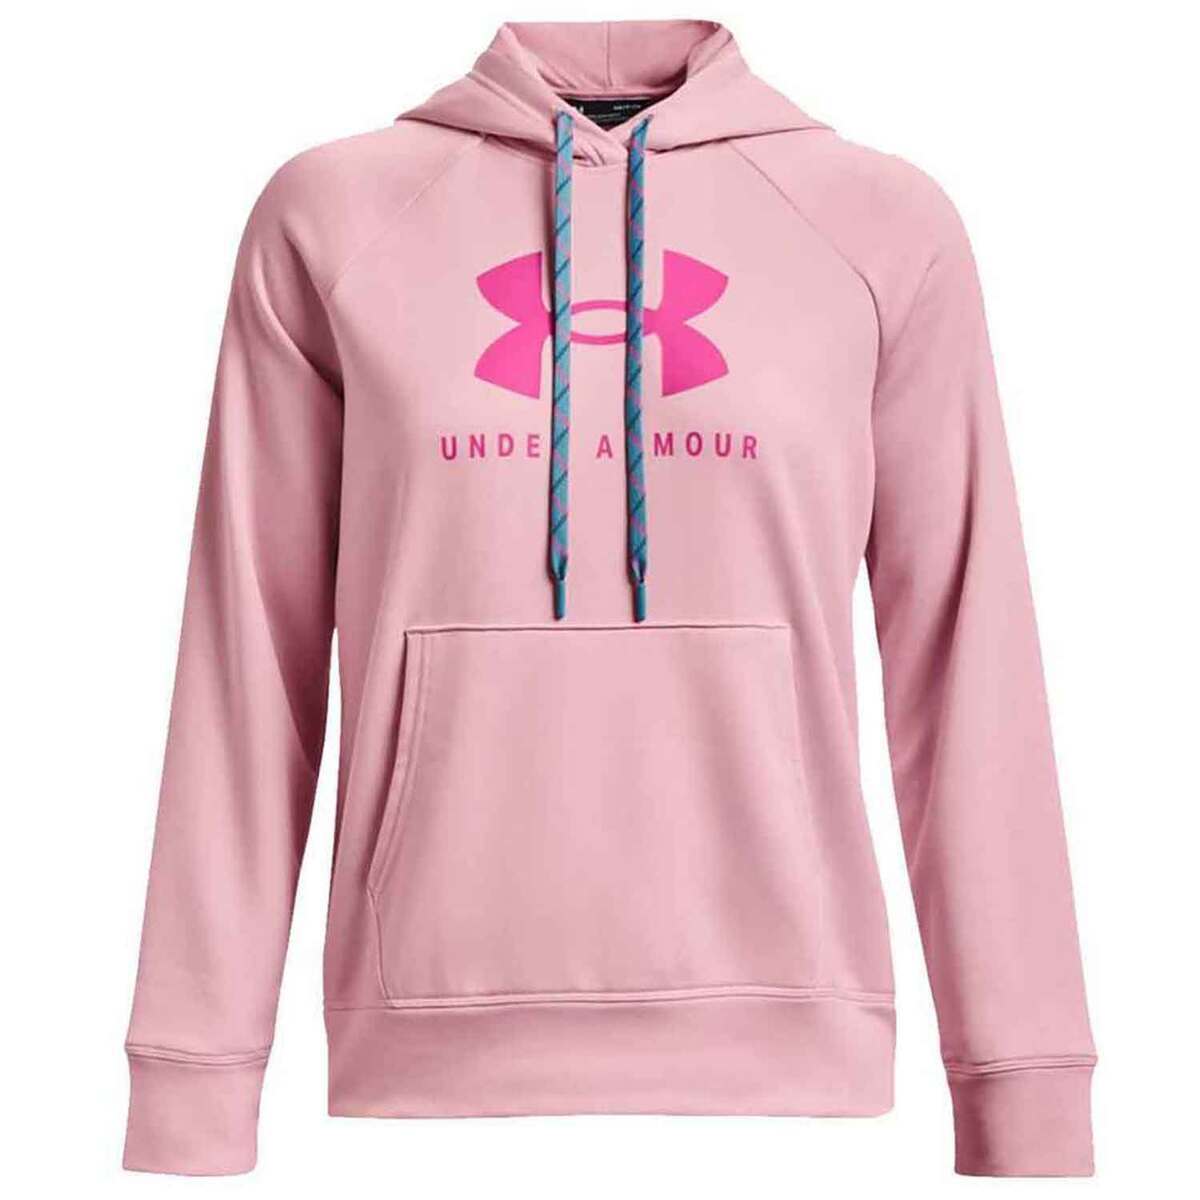 https://www.sportsmans.com/medias/under-armour-womens-shoreline-terry-casual-hoodie-pink-sugar-s-1763466-1.jpg?context=bWFzdGVyfGltYWdlc3w1NTI0NnxpbWFnZS9qcGVnfGFHRXdMMmd5TkM4eE1UUTJPVGt6T1RFM09UVTFNQzh4TWpBd0xXTnZiblpsY25OcGIyNUdiM0p0WVhSZlltRnpaUzFqYjI1MlpYSnphVzl1Um05eWJXRjBYM050ZHkweE56WXpORFkyTFRFdWFuQm58OTljZTYyN2U5Mzk5M2MzNzYzMmI2YWJlNTBjYjZmNTY1YzM5ZGZhNDZmODI3YTVlYTY5ZDdlMGU3NjZkMWQxOA